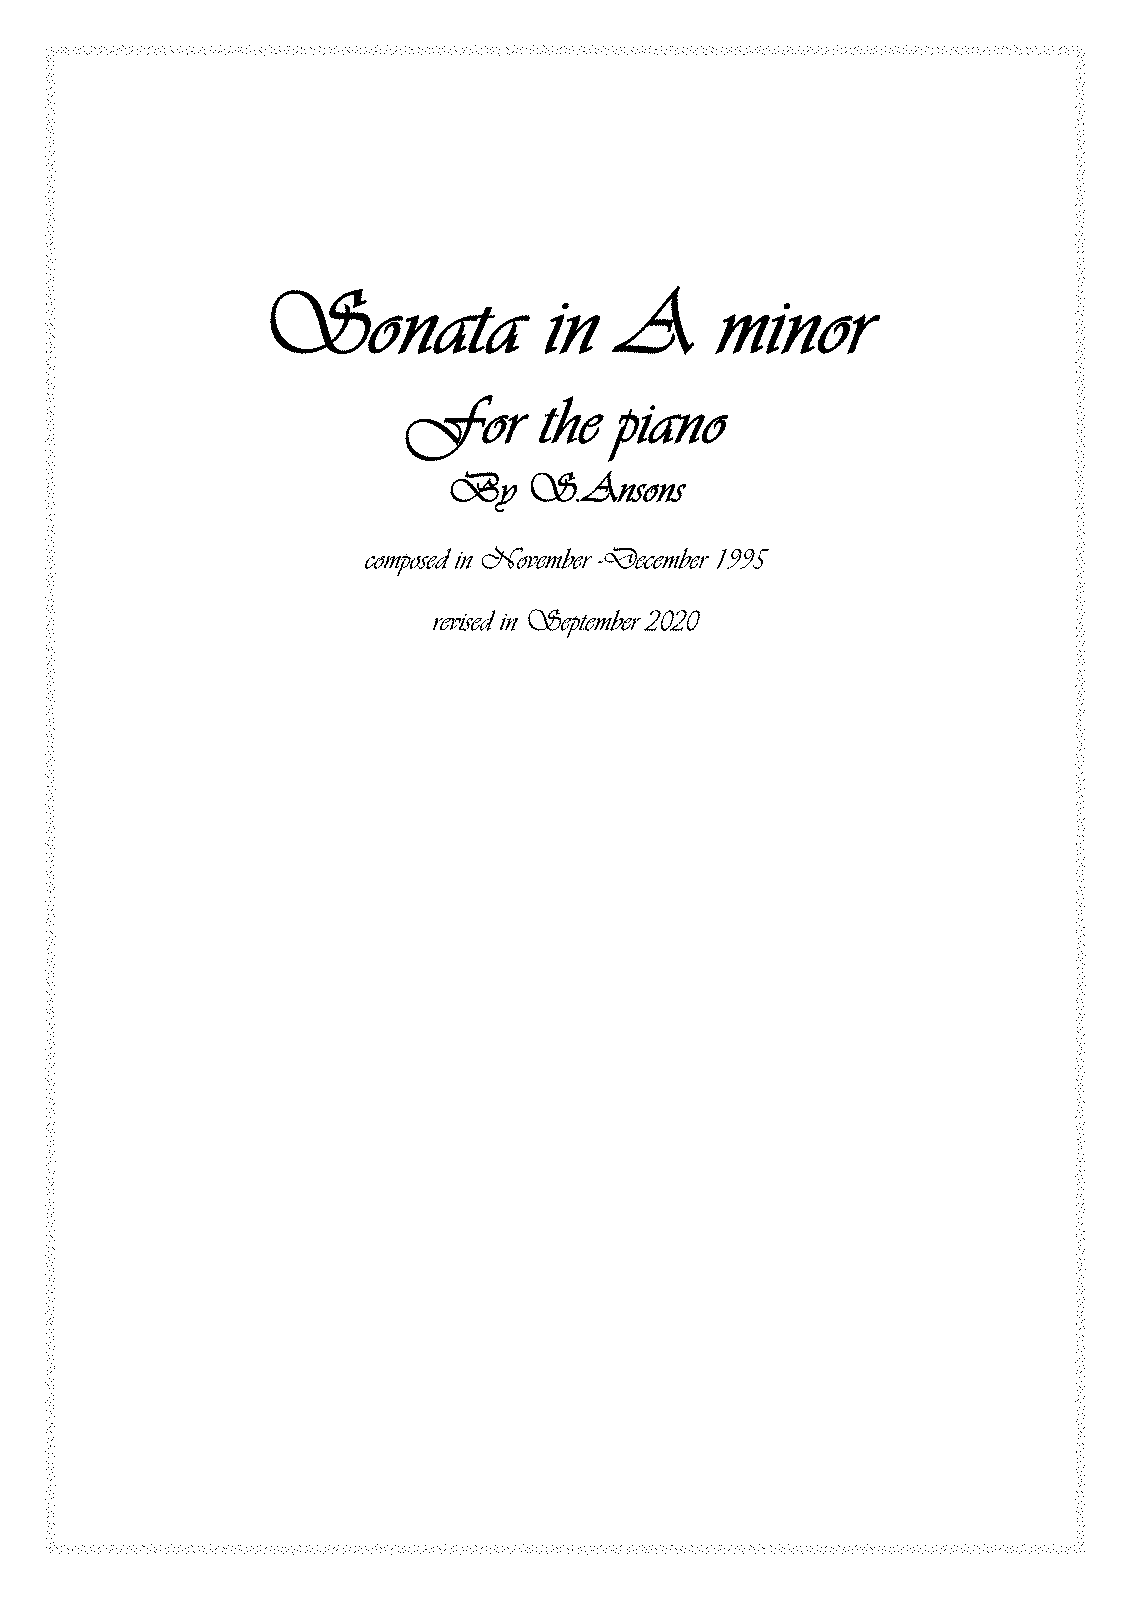 Piano Sonata in A minor (Ansons, Stephane) - IMSLP